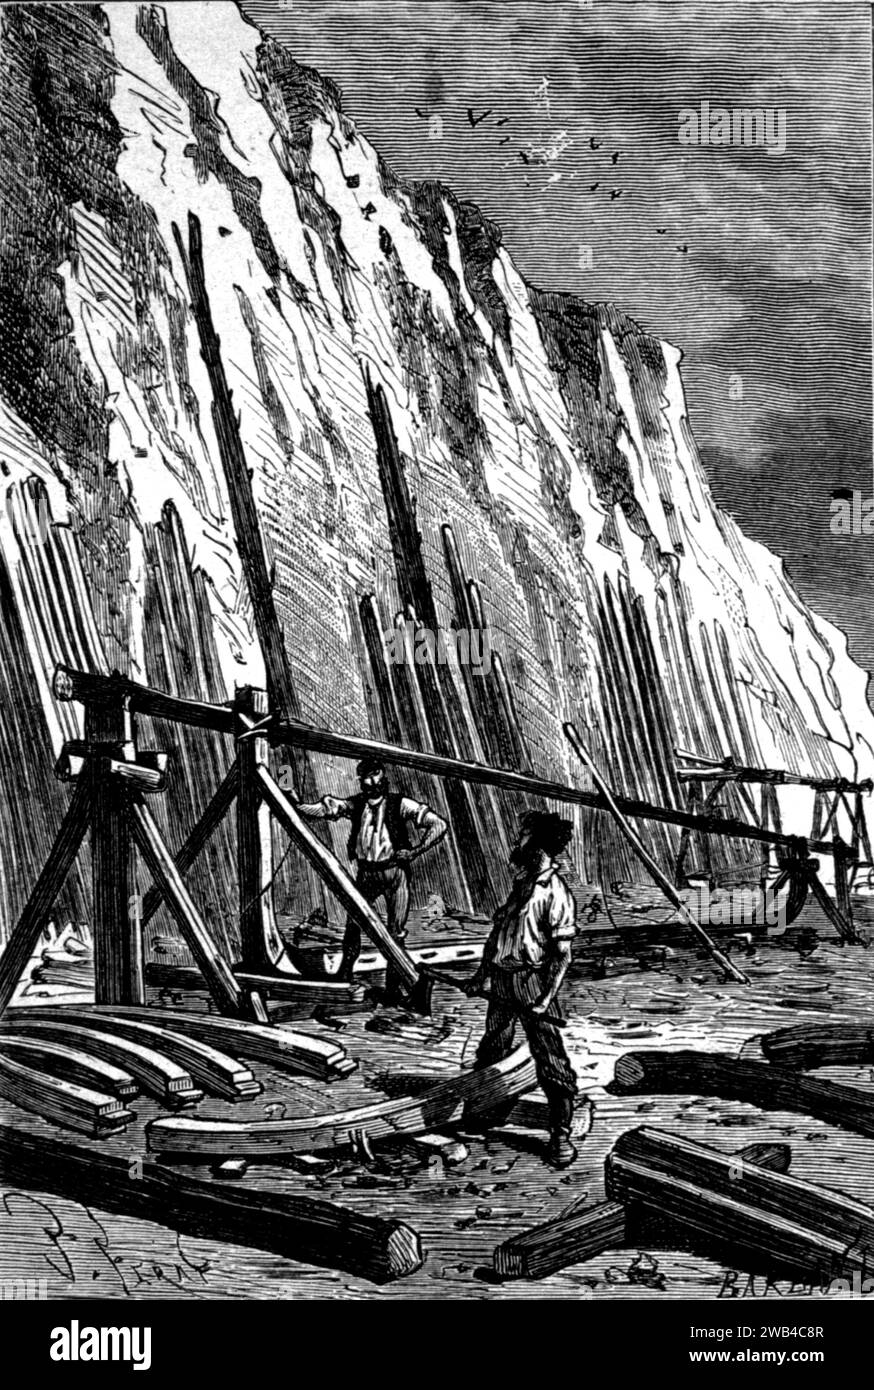 Illustrazione Jules Verne, "l'isola misteriosa" (francese: L'Île mystérieuse): "Una chiglia lunga 35 metri..." Edizioni Hetzel, 1874/1875 Collezione privata Foto Stock